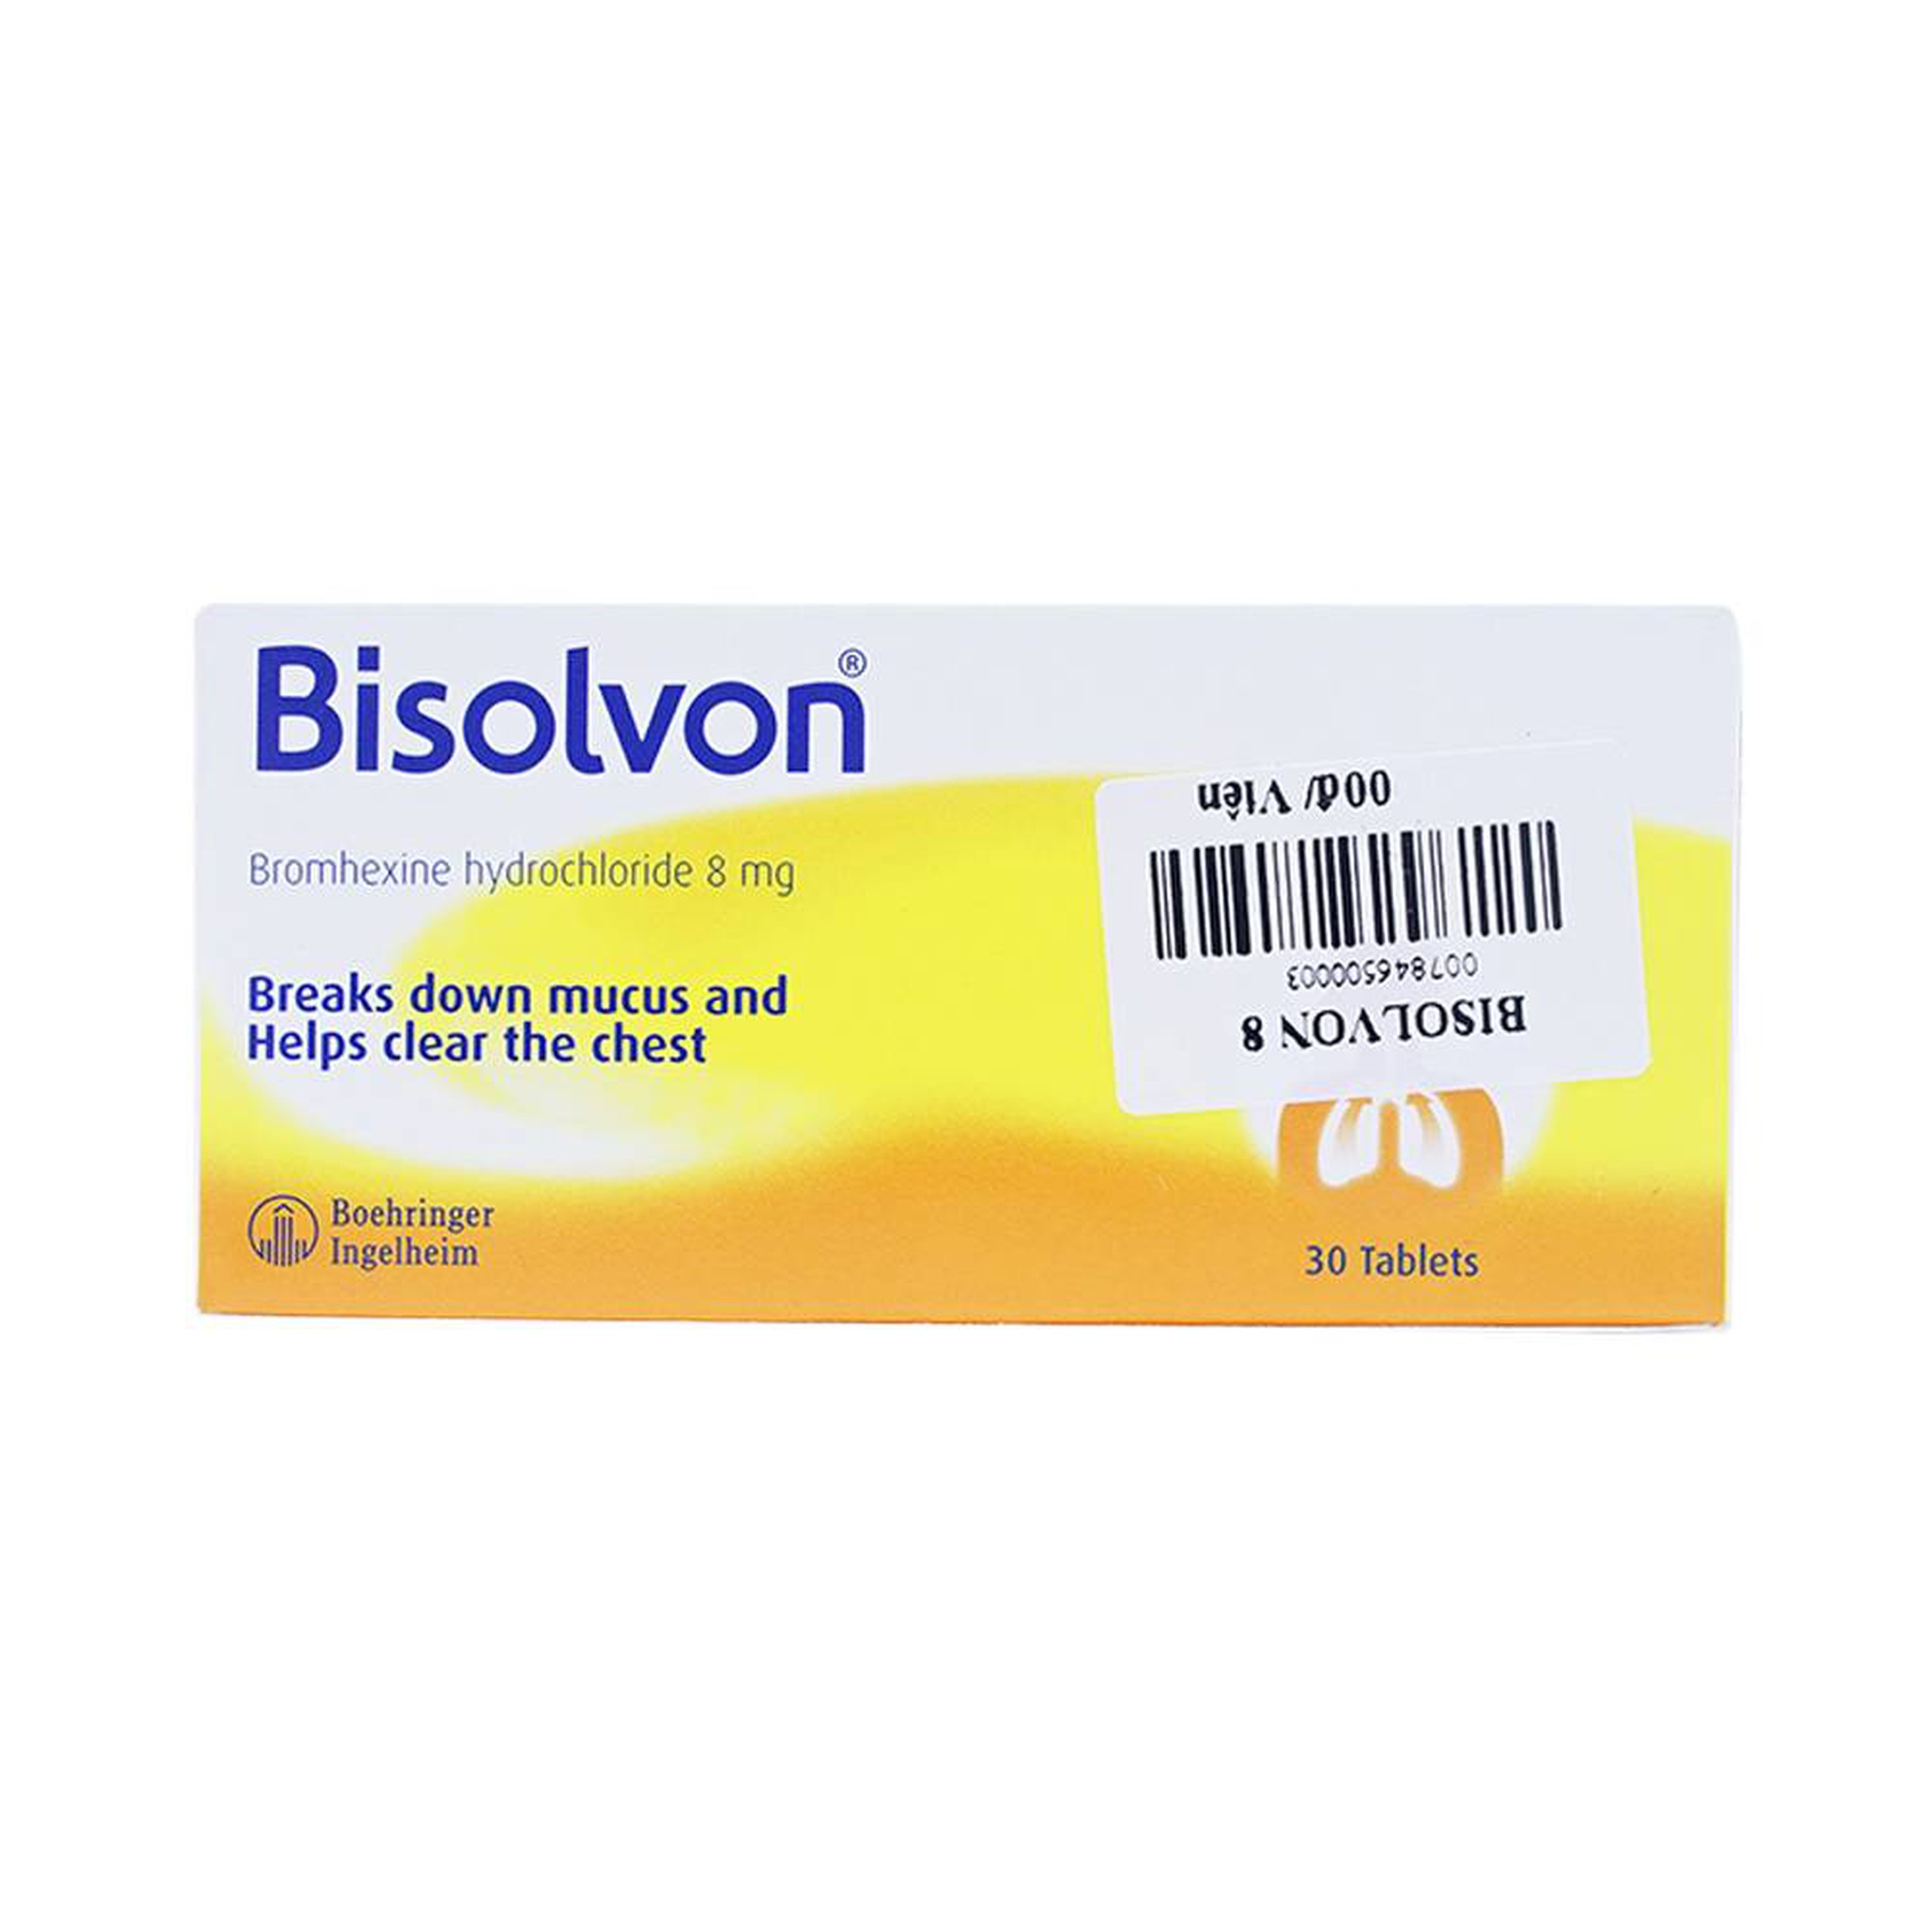 Thuốc Bisolvon 8mg Boehringer làm loãng đờm, tiêu chất nhầy (3 vỉ x 10 viên)